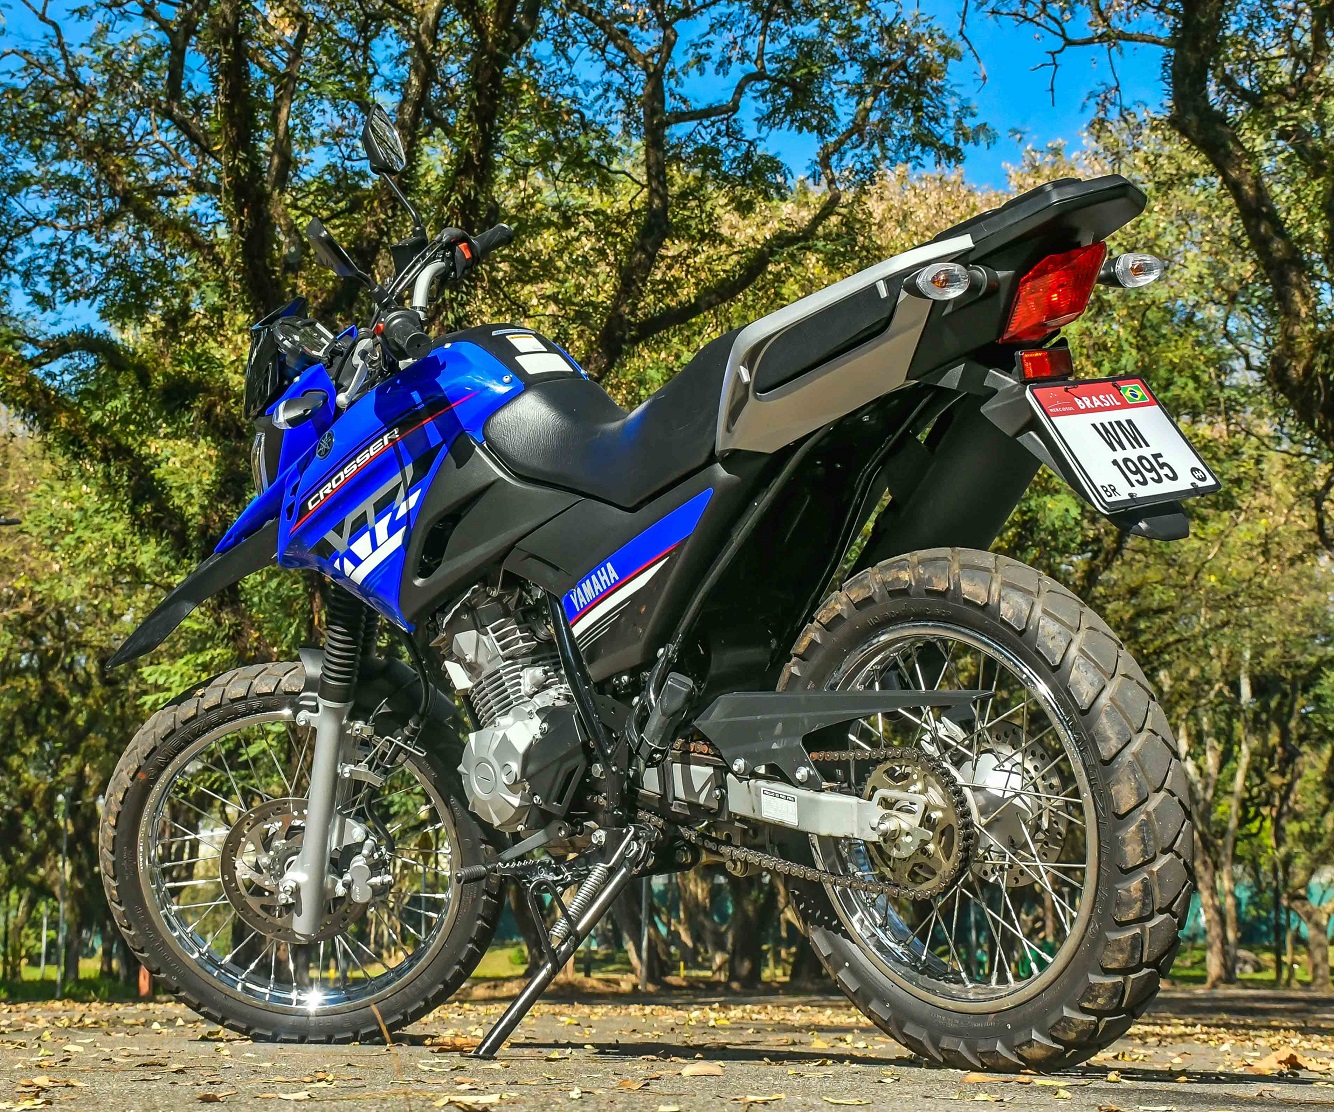 Yamaha Crosser 150 2019 ganha freio ABS e disco na traseira